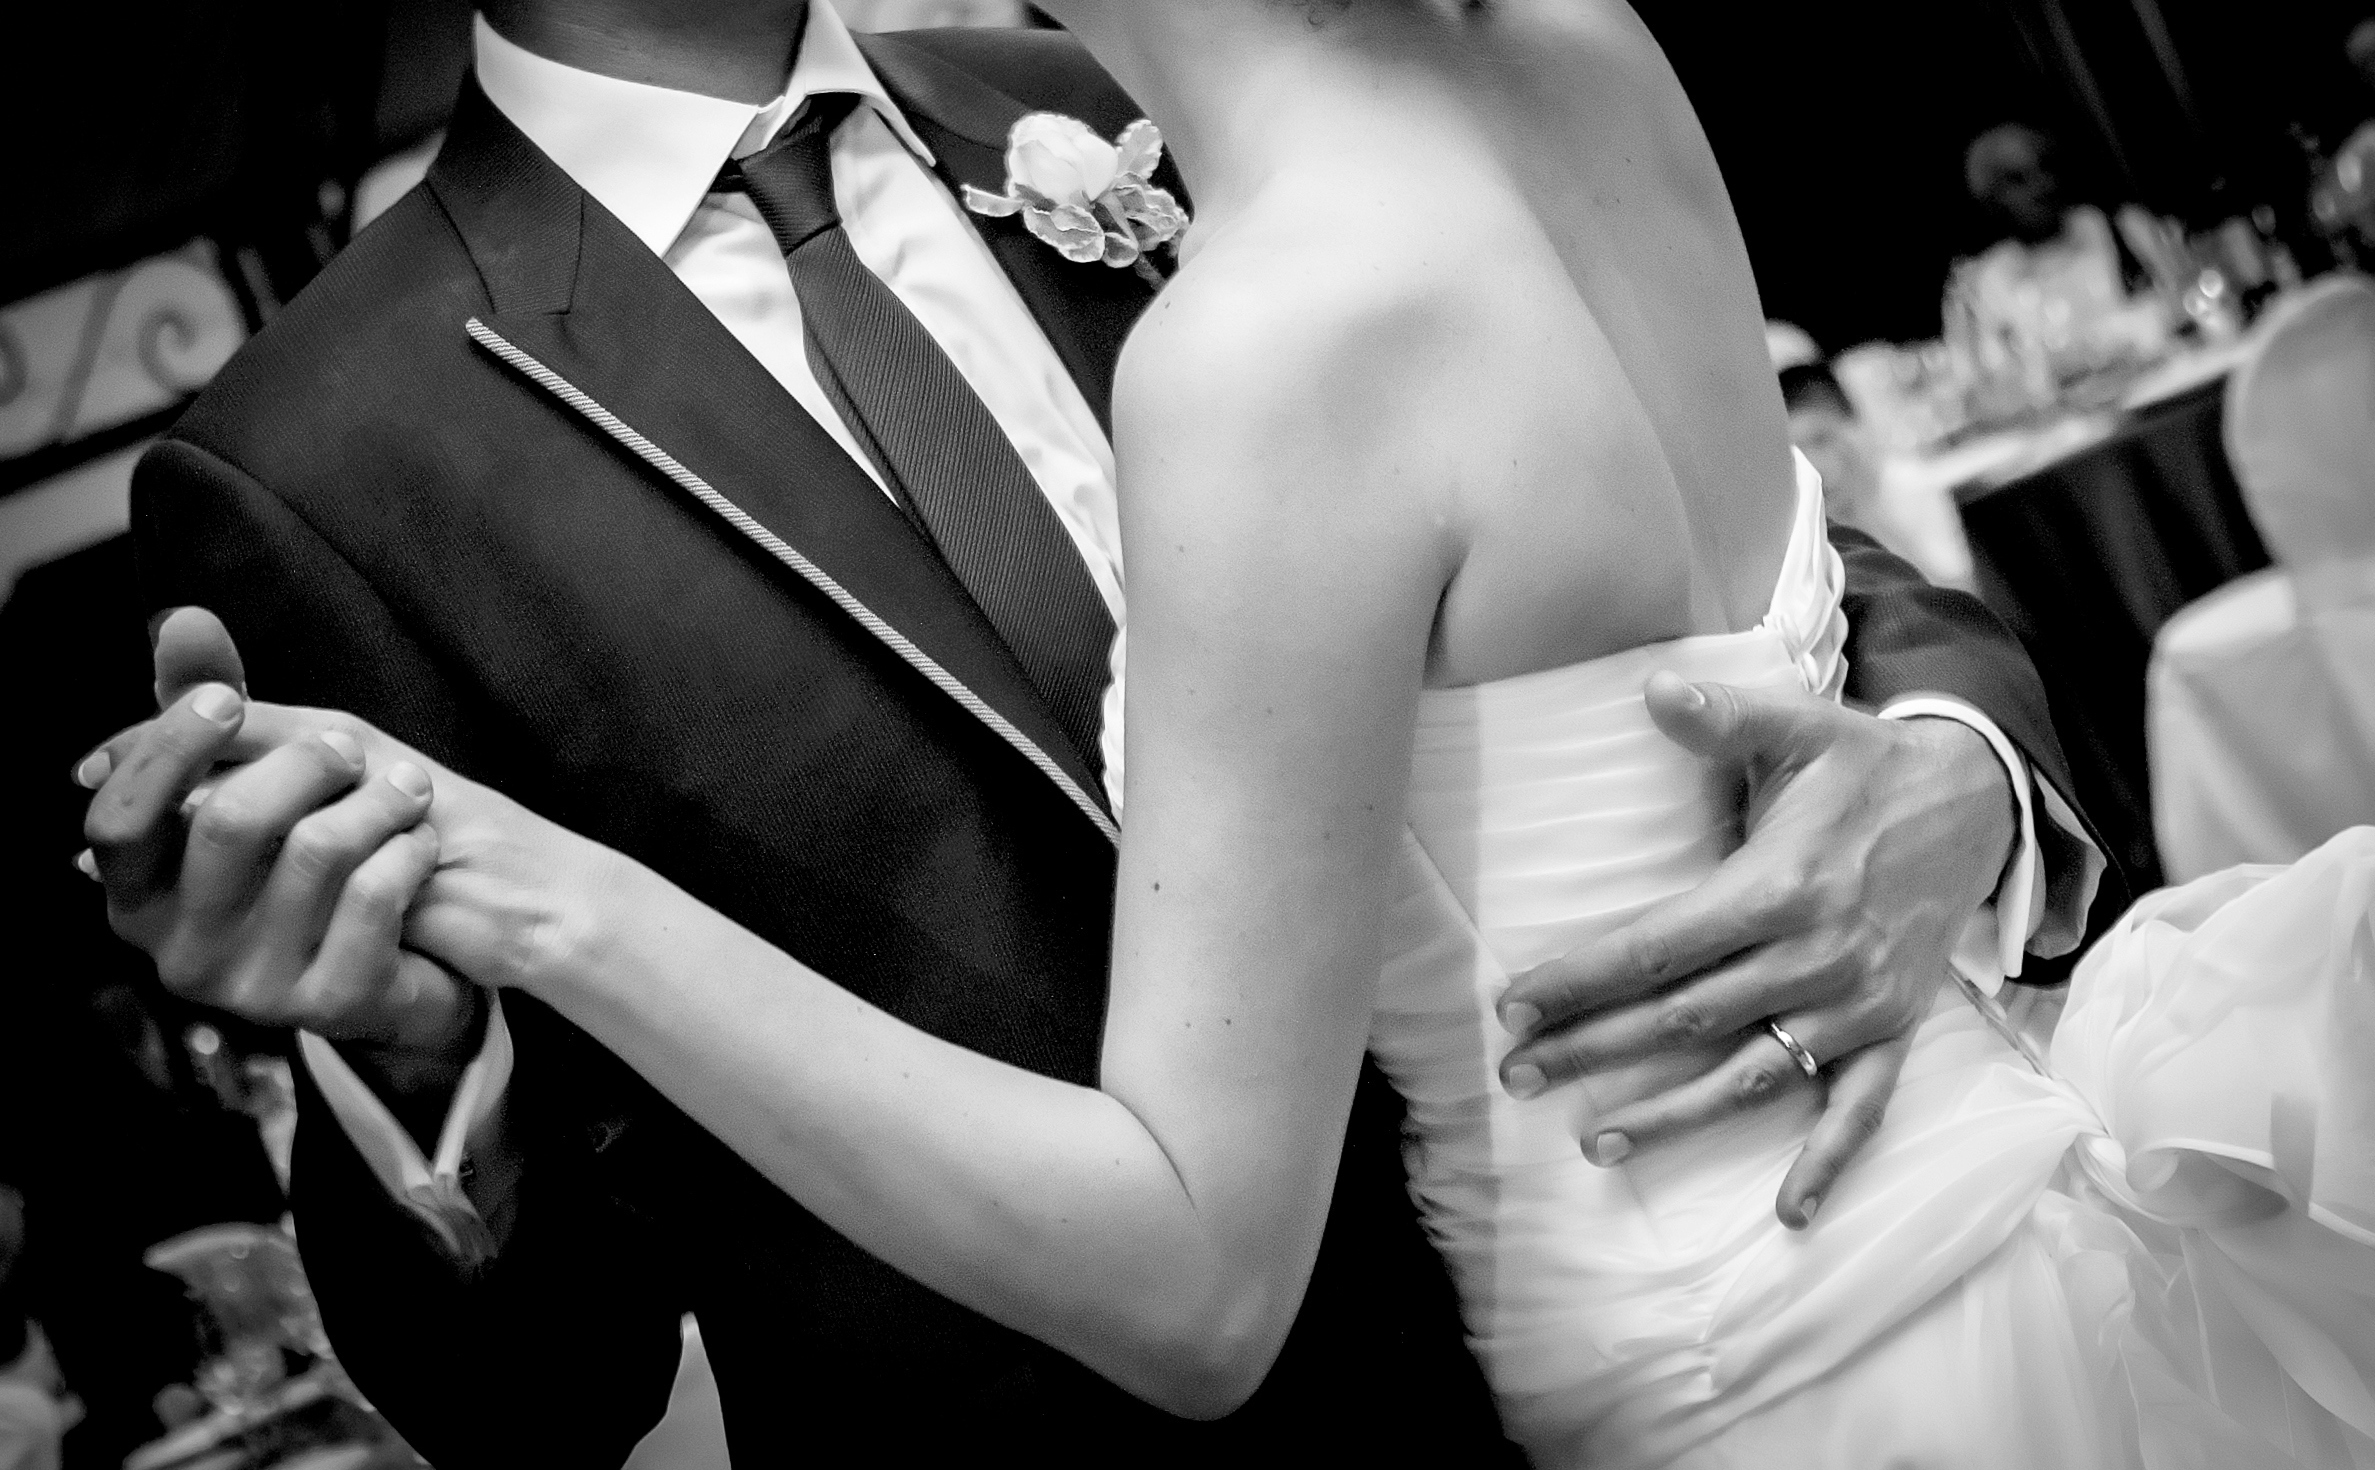 Matrimoni, lo strano divieto imposto per legge in Russia